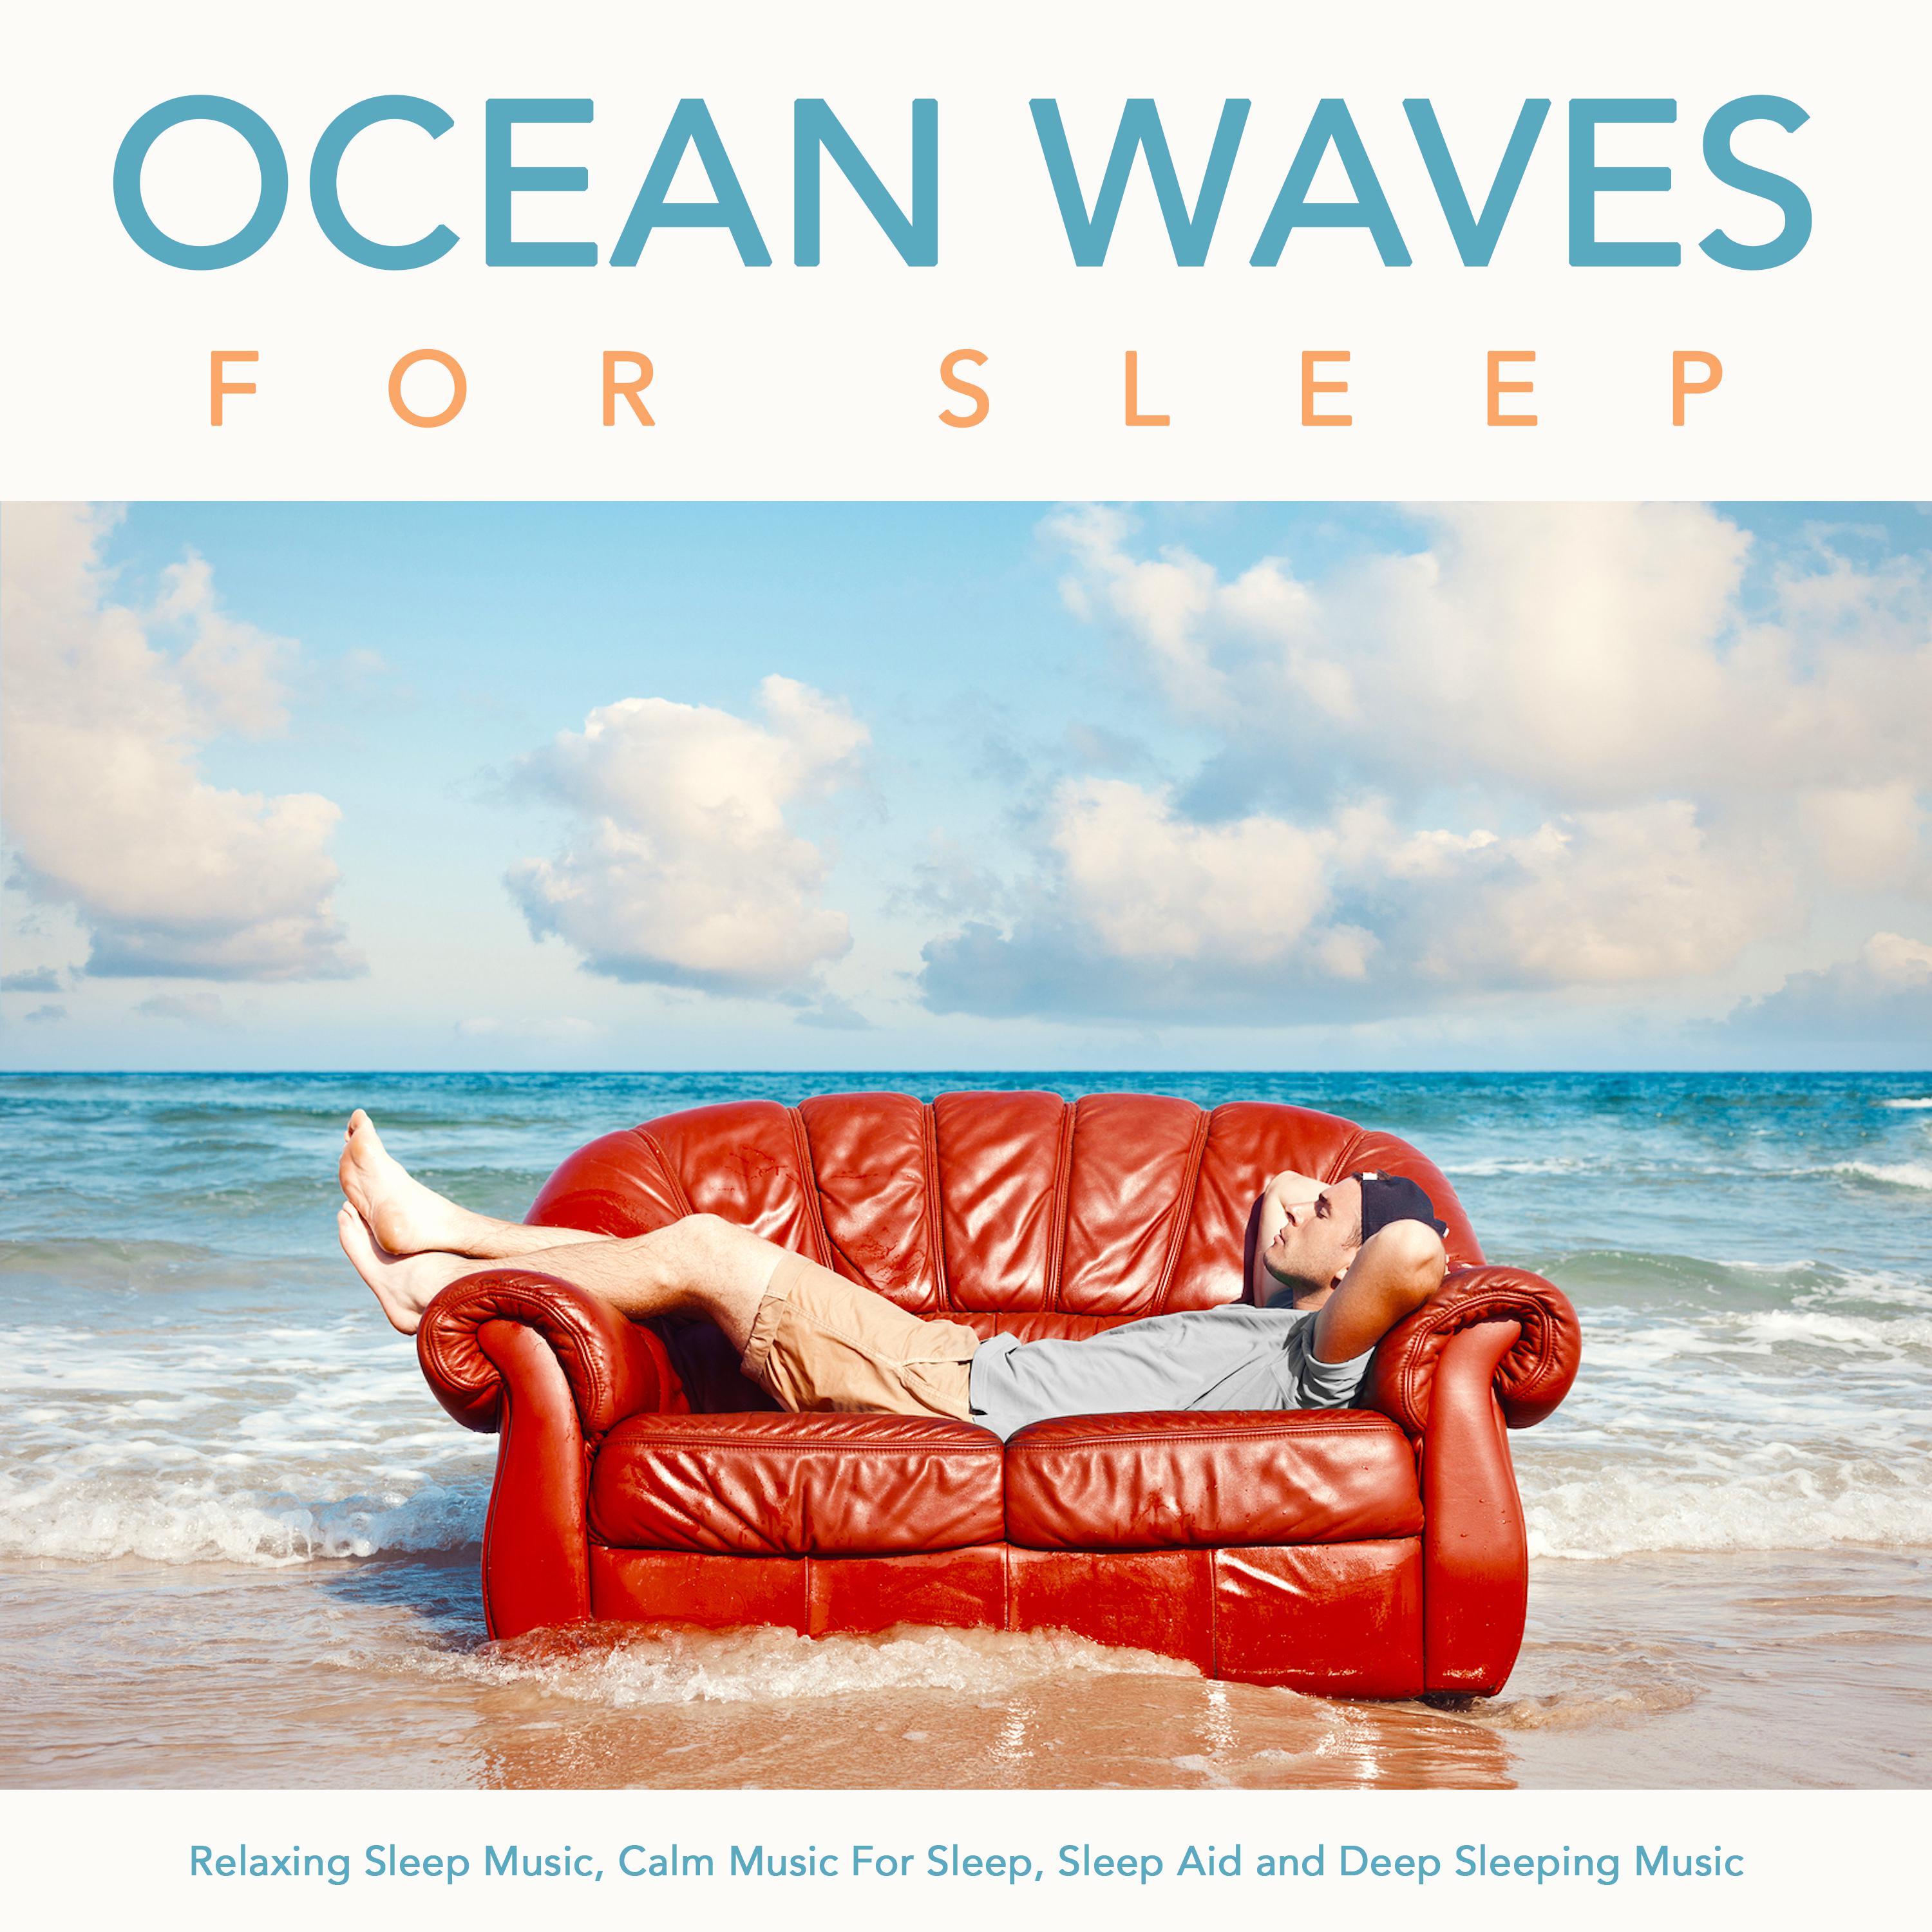 Peaceful Sleeping Music With Ocean Waves